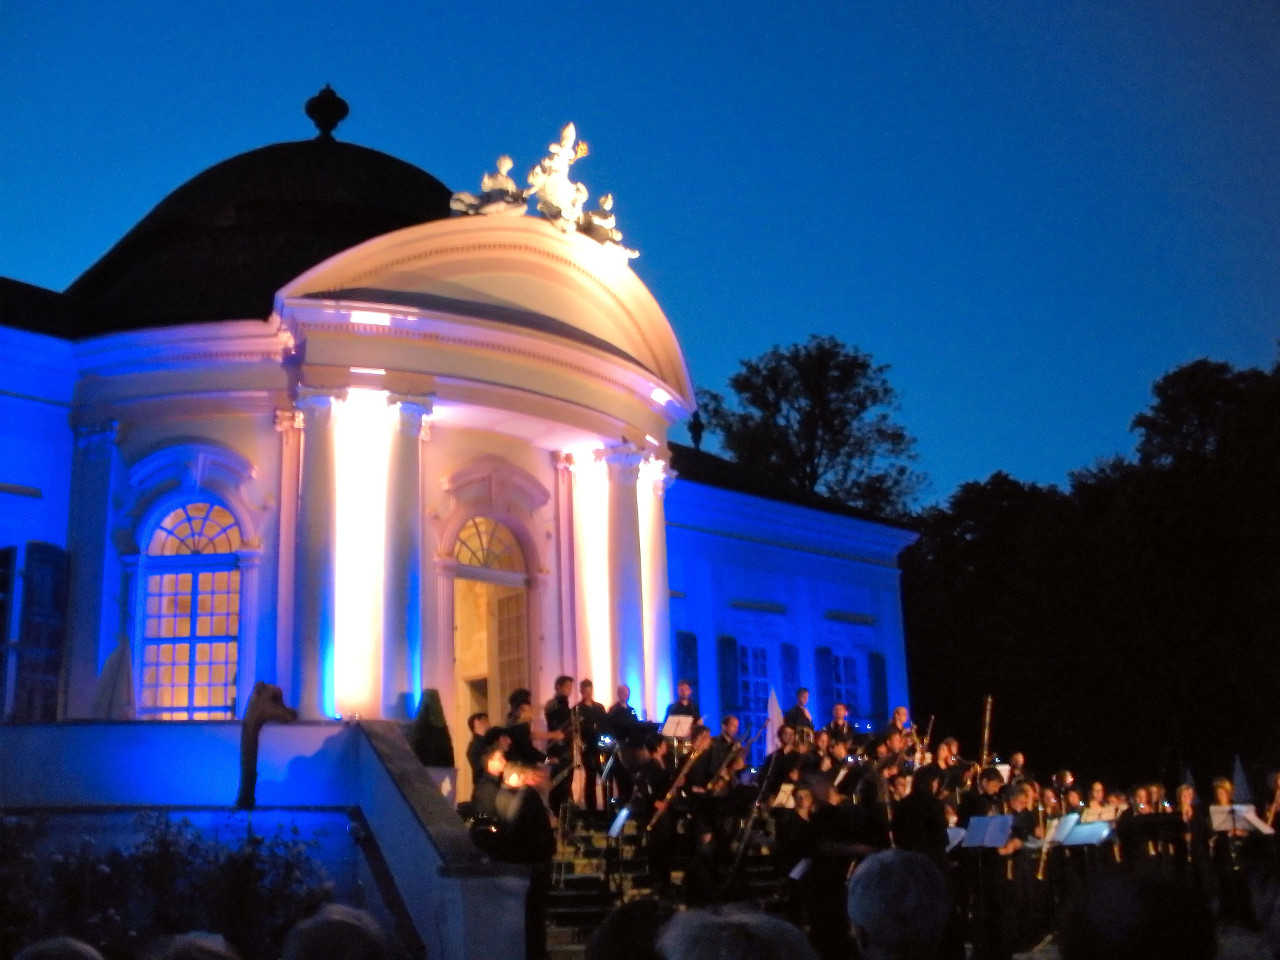 Festlich stimmungsvolle Kulisse für Händels Feuerwerksmusik beim Gartenpavillon